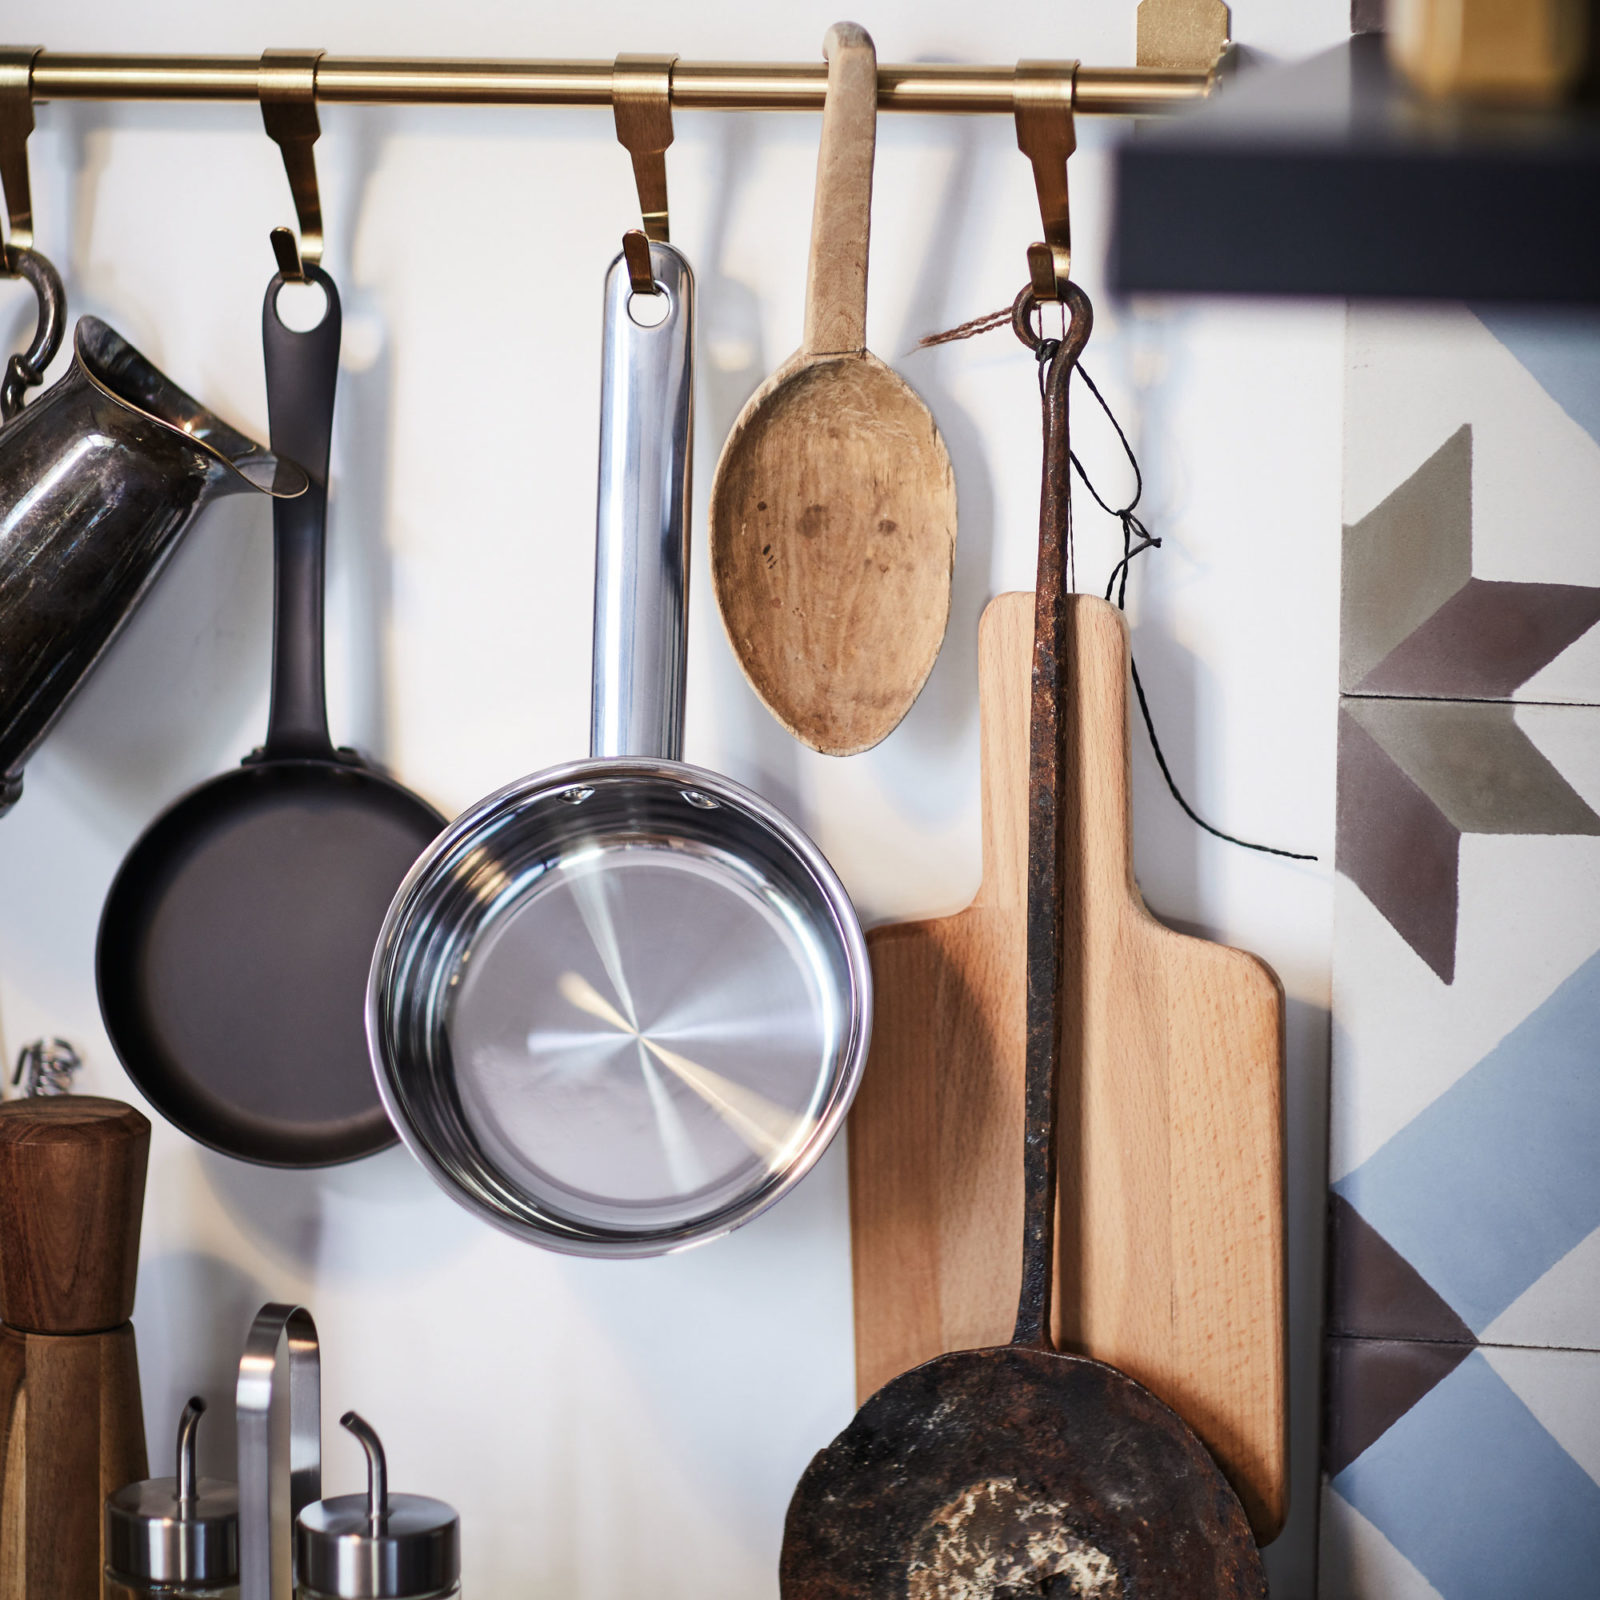 Närbild på köksredskap, skärbräda och kastruller som hänger på krokar på väggen.